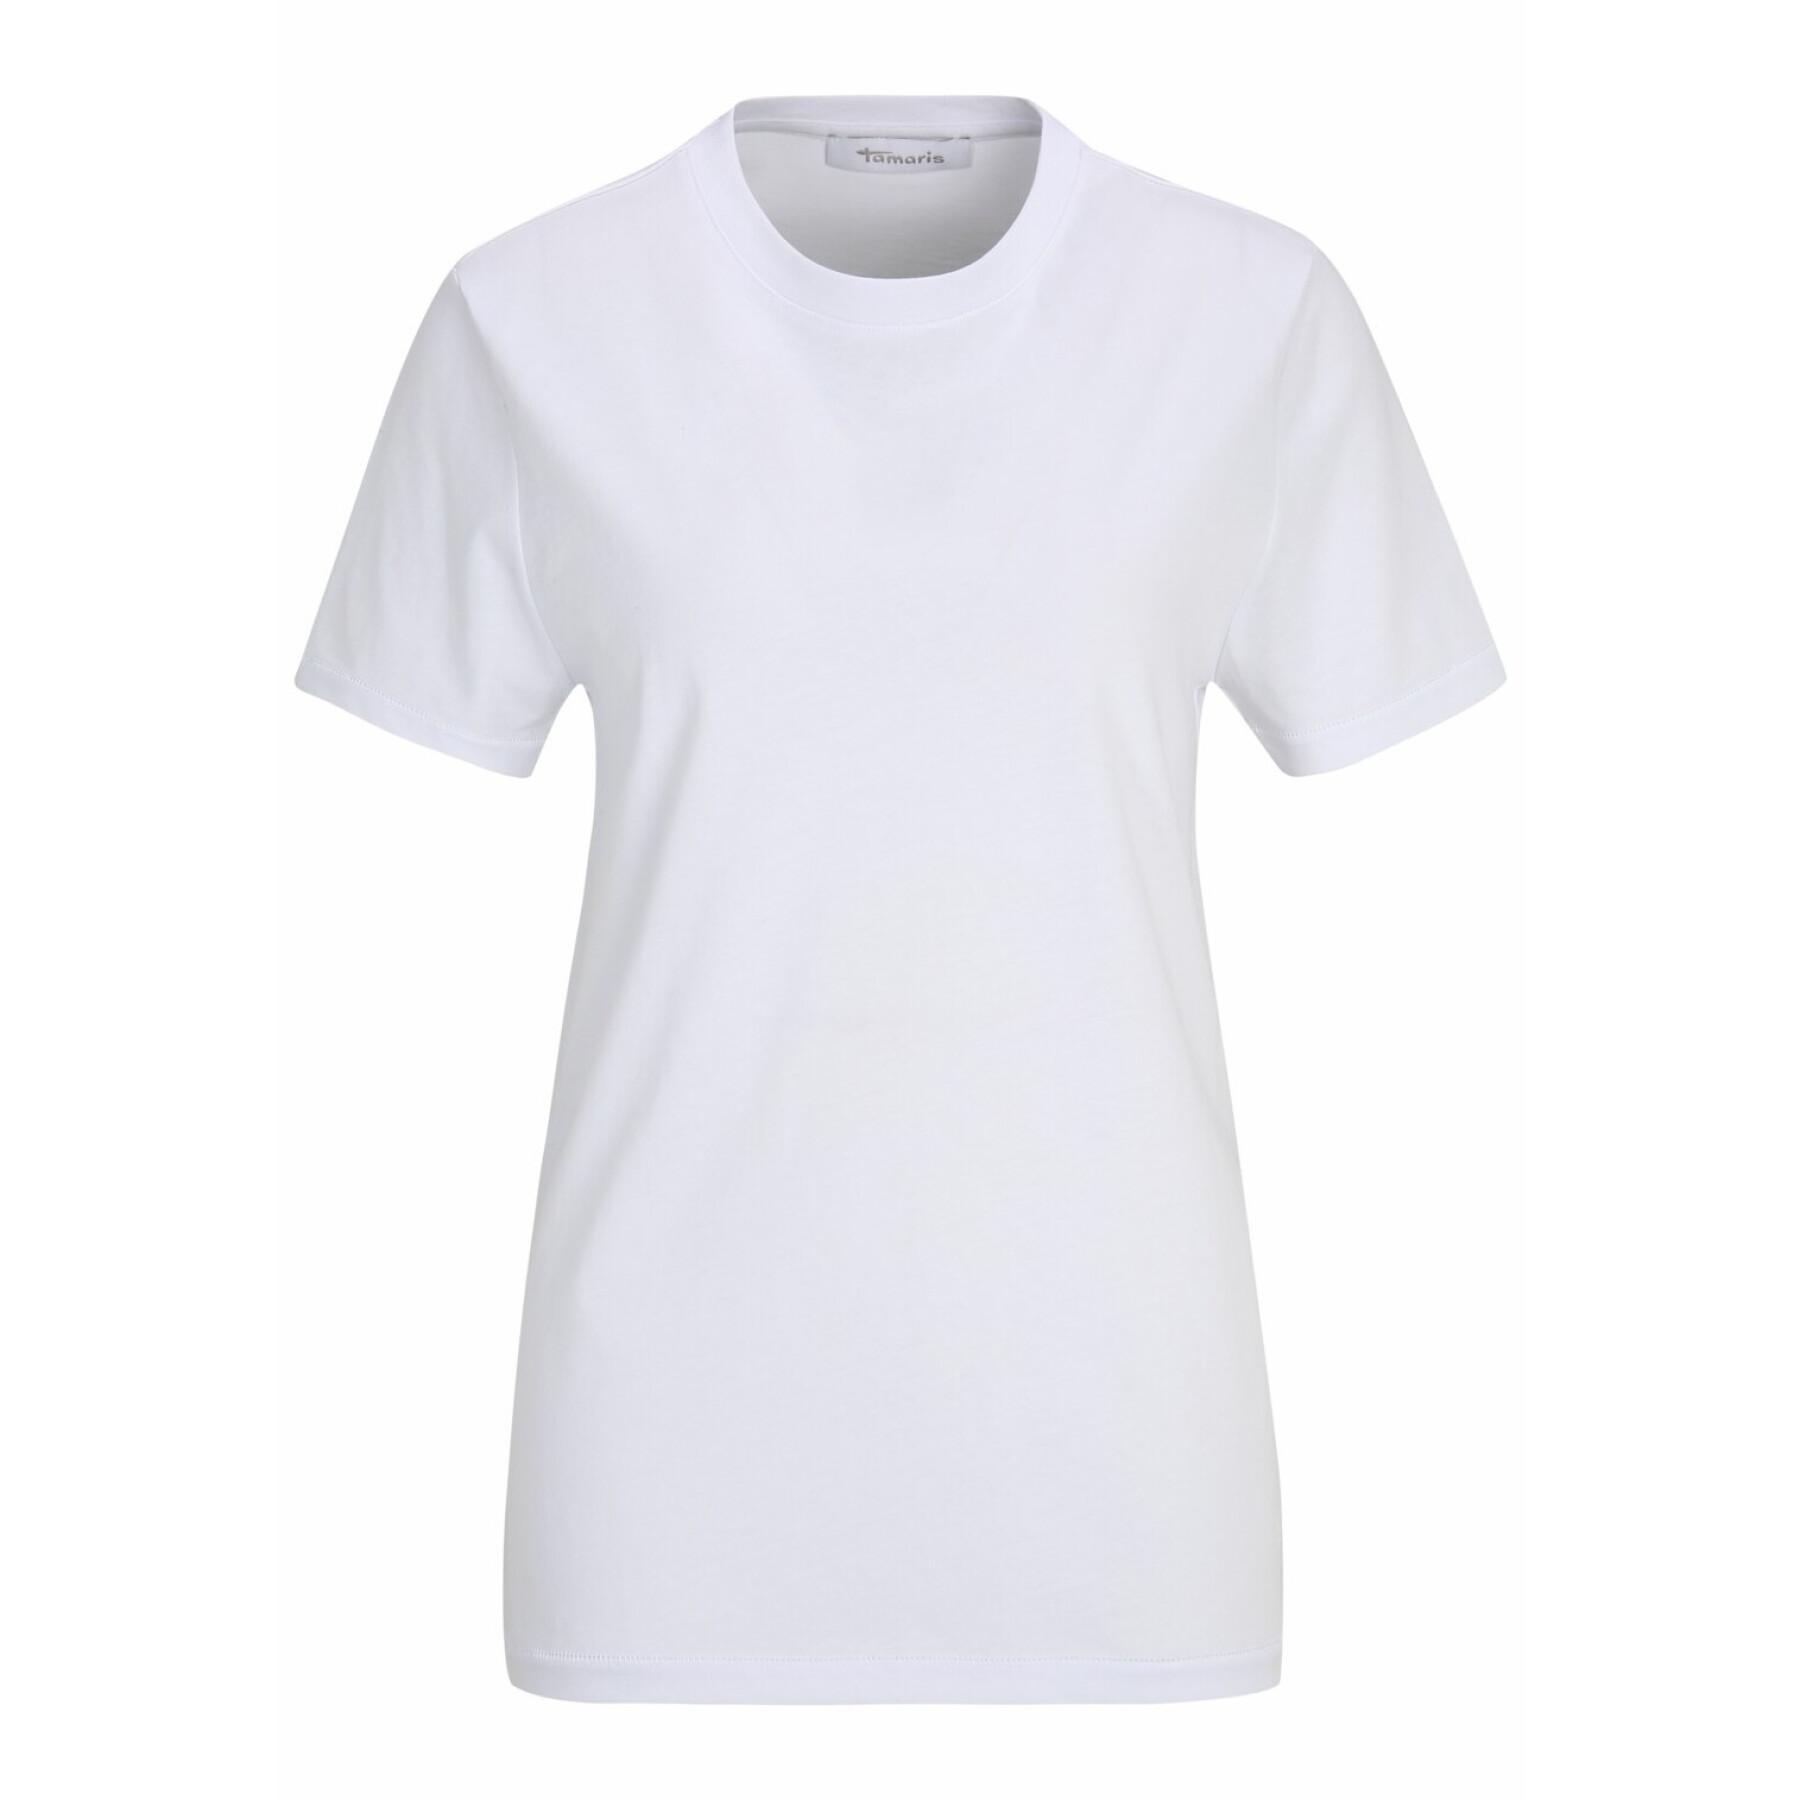 Plain T-shirt for women Tamaris Adria - T-shirts - T-shirts and tank tops -  Women\'s Clothing